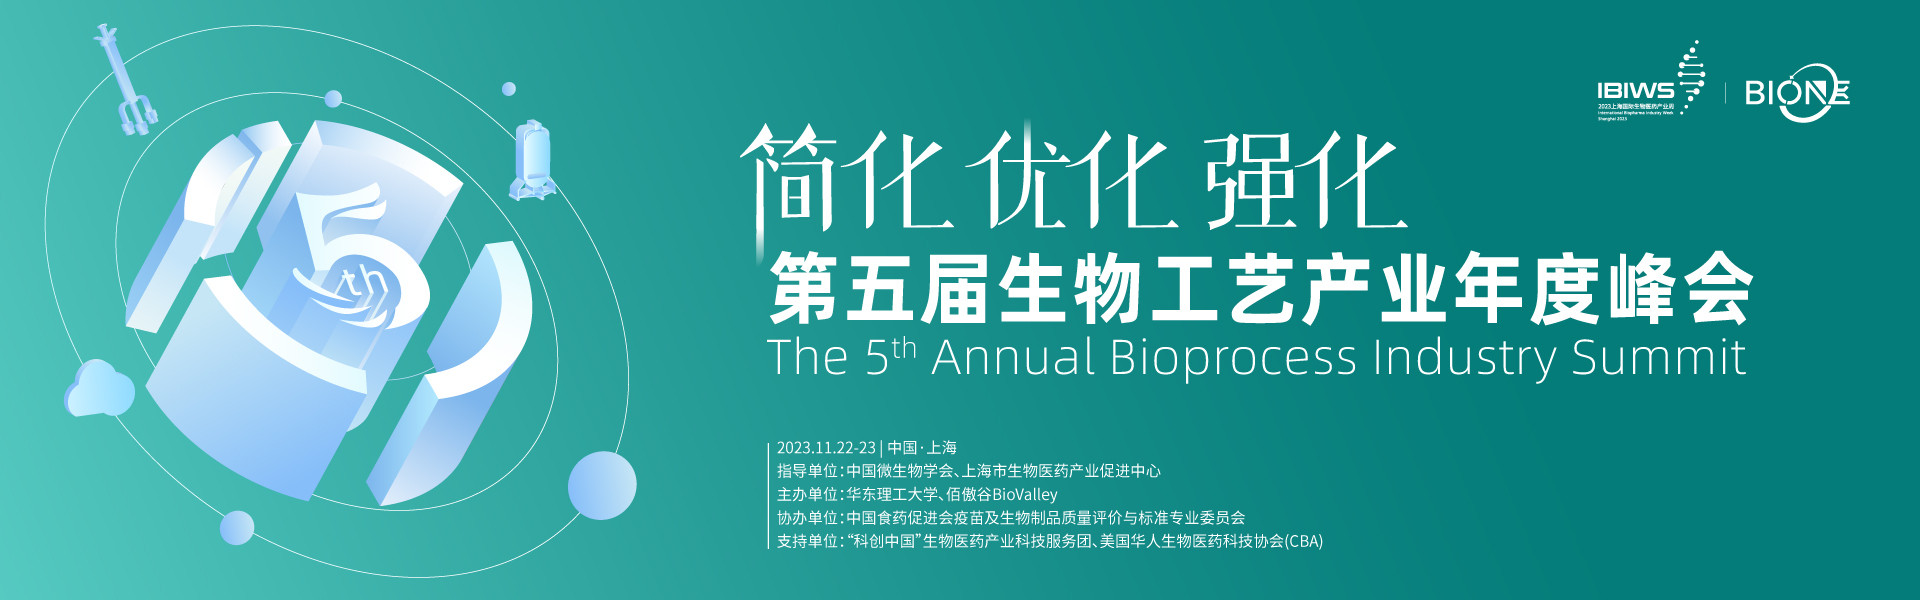 Bio-ONE 2023第五屆生物工藝產業年度峰會